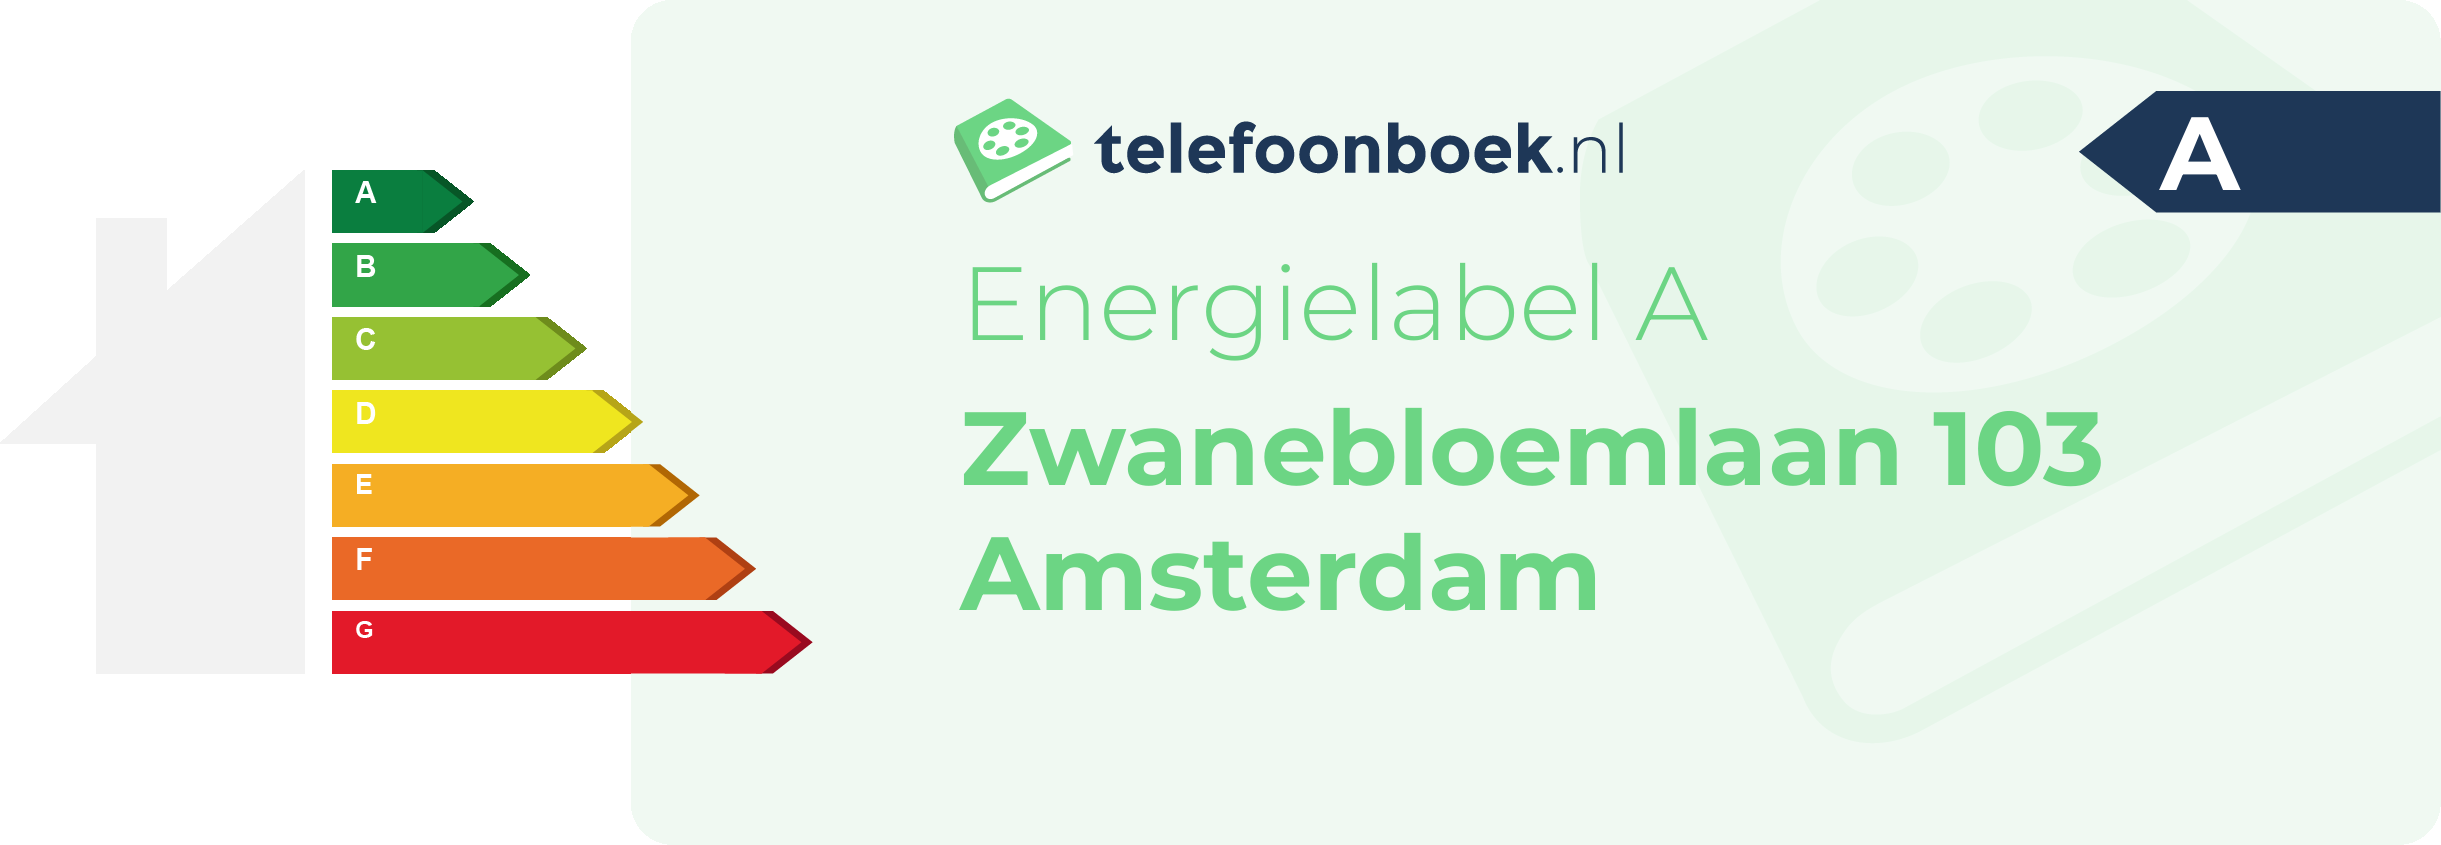 Energielabel Zwanebloemlaan 103 Amsterdam